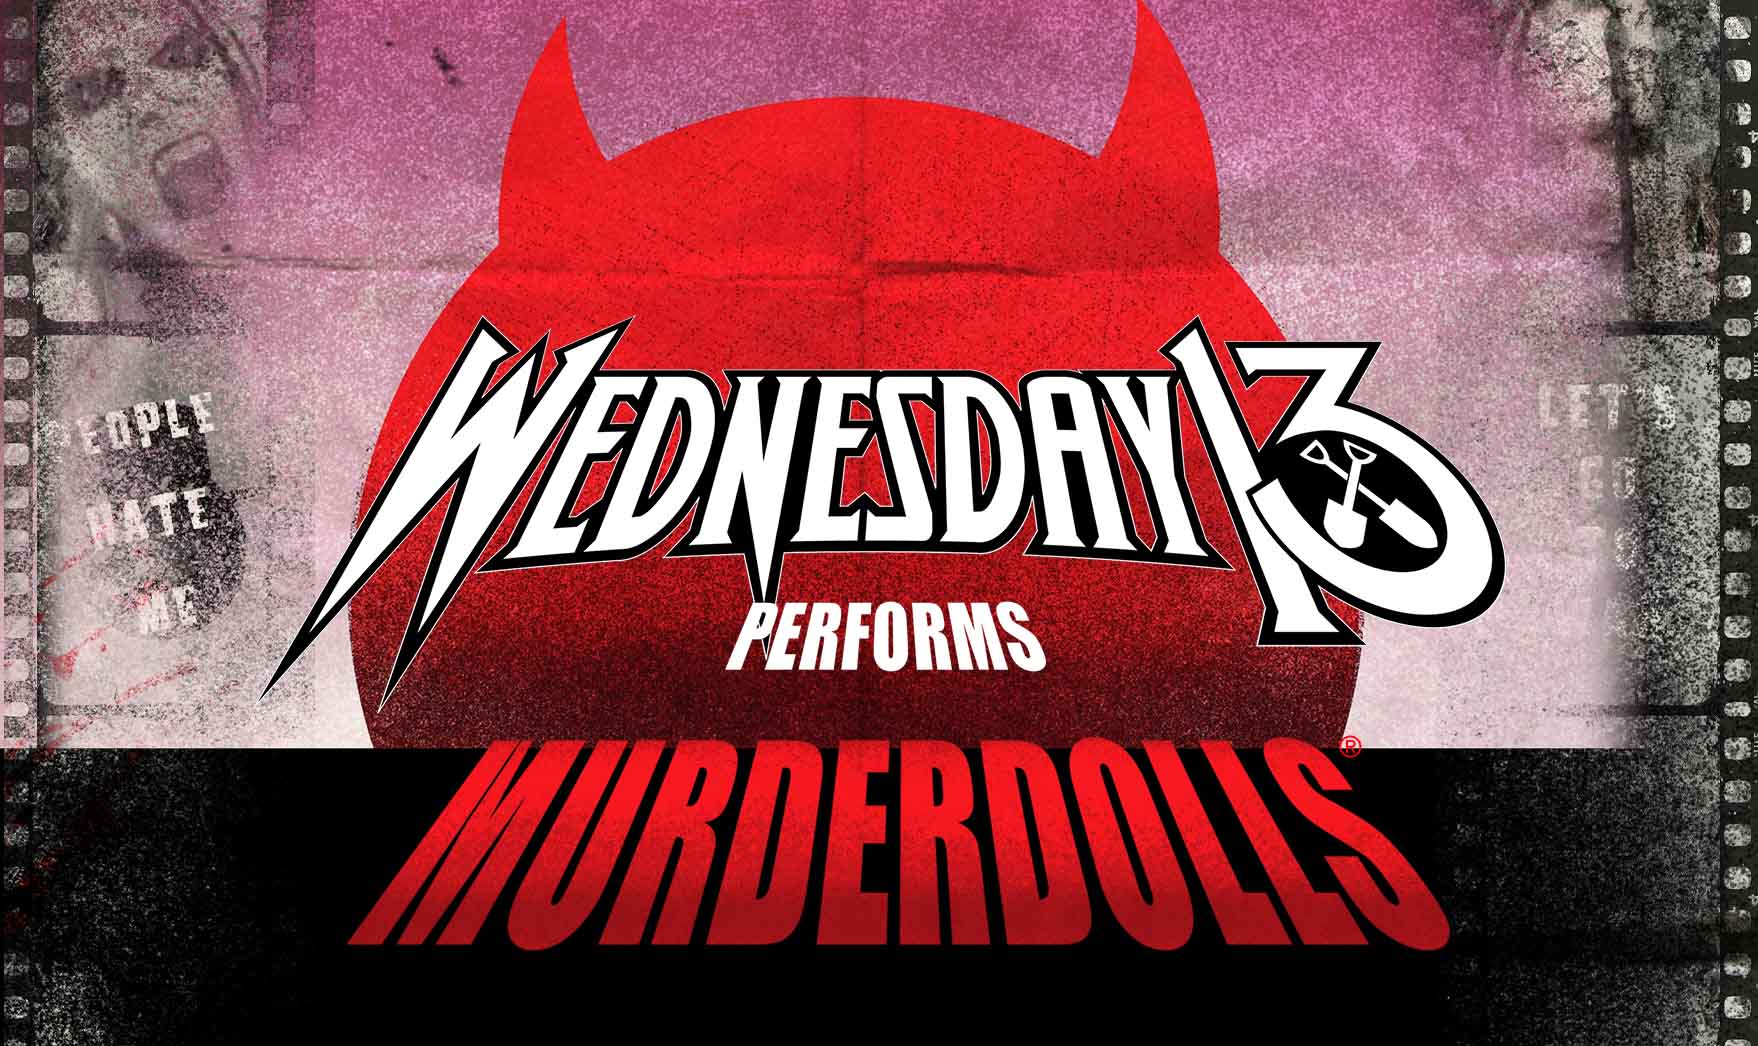 Wednesday 13 Performing Murderdolls en Manchester Club Academy Tickets